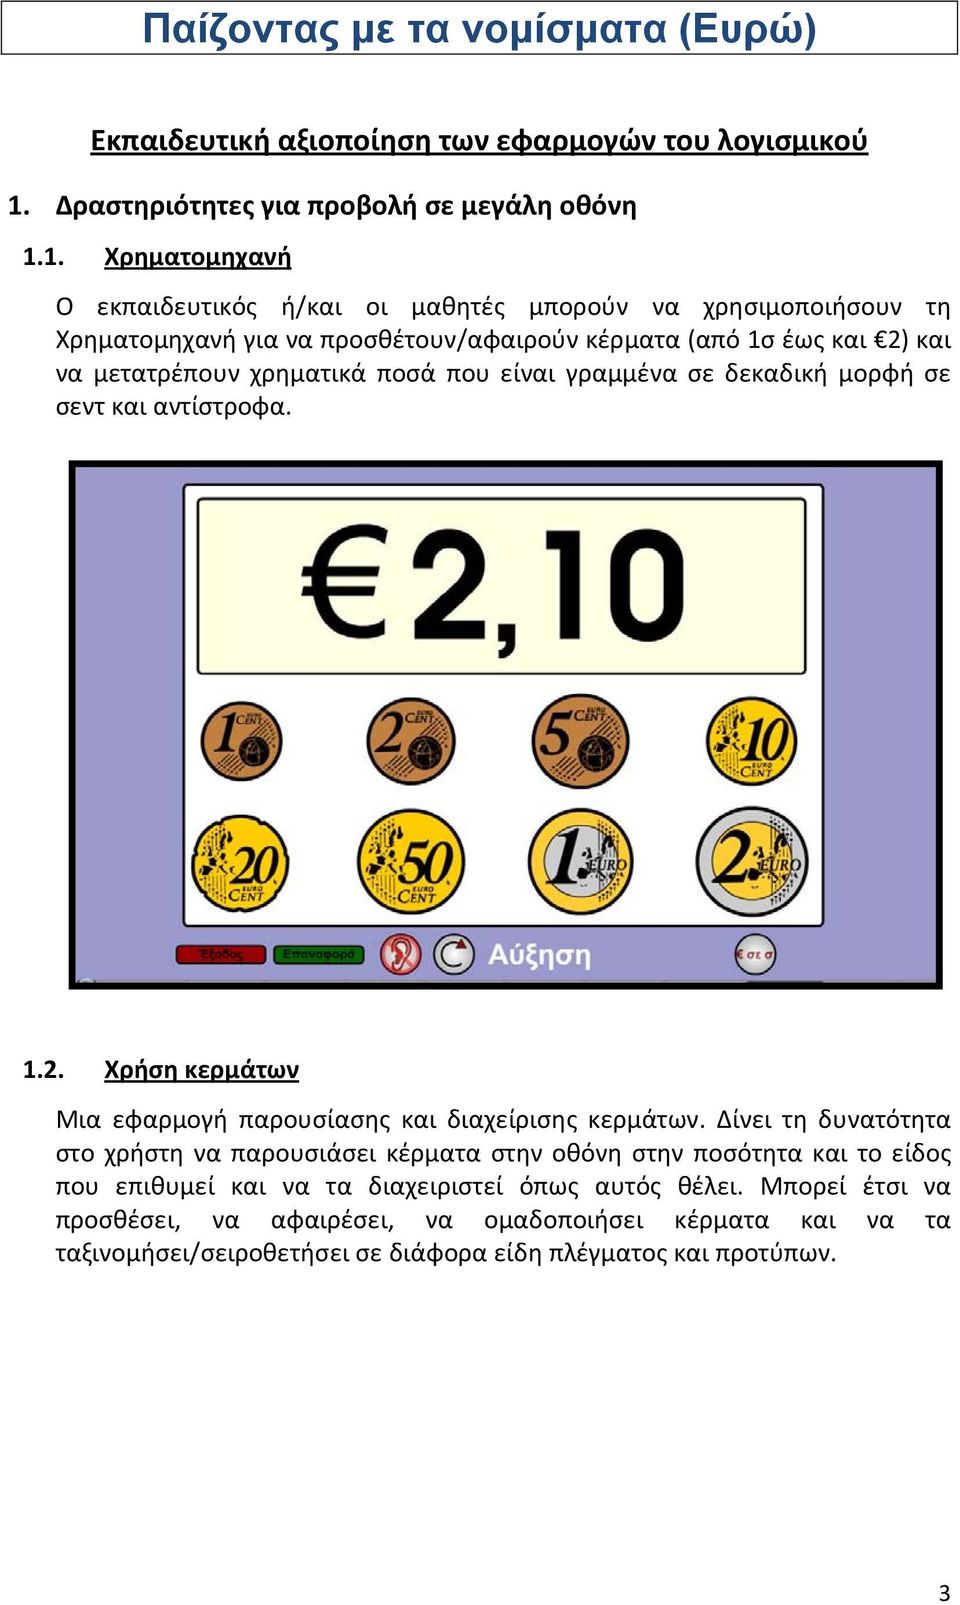 1. Χρηματομηχανή Ο εκπαιδευτικός ή/και οι μαθητές μπορούν να χρησιμοποιήσουν τη Χρηματομηχανή για να προσθέτουν/αφαιρούν κέρματα (από 1σ έως και 2) και να μετατρέπουν χρηματικά ποσά